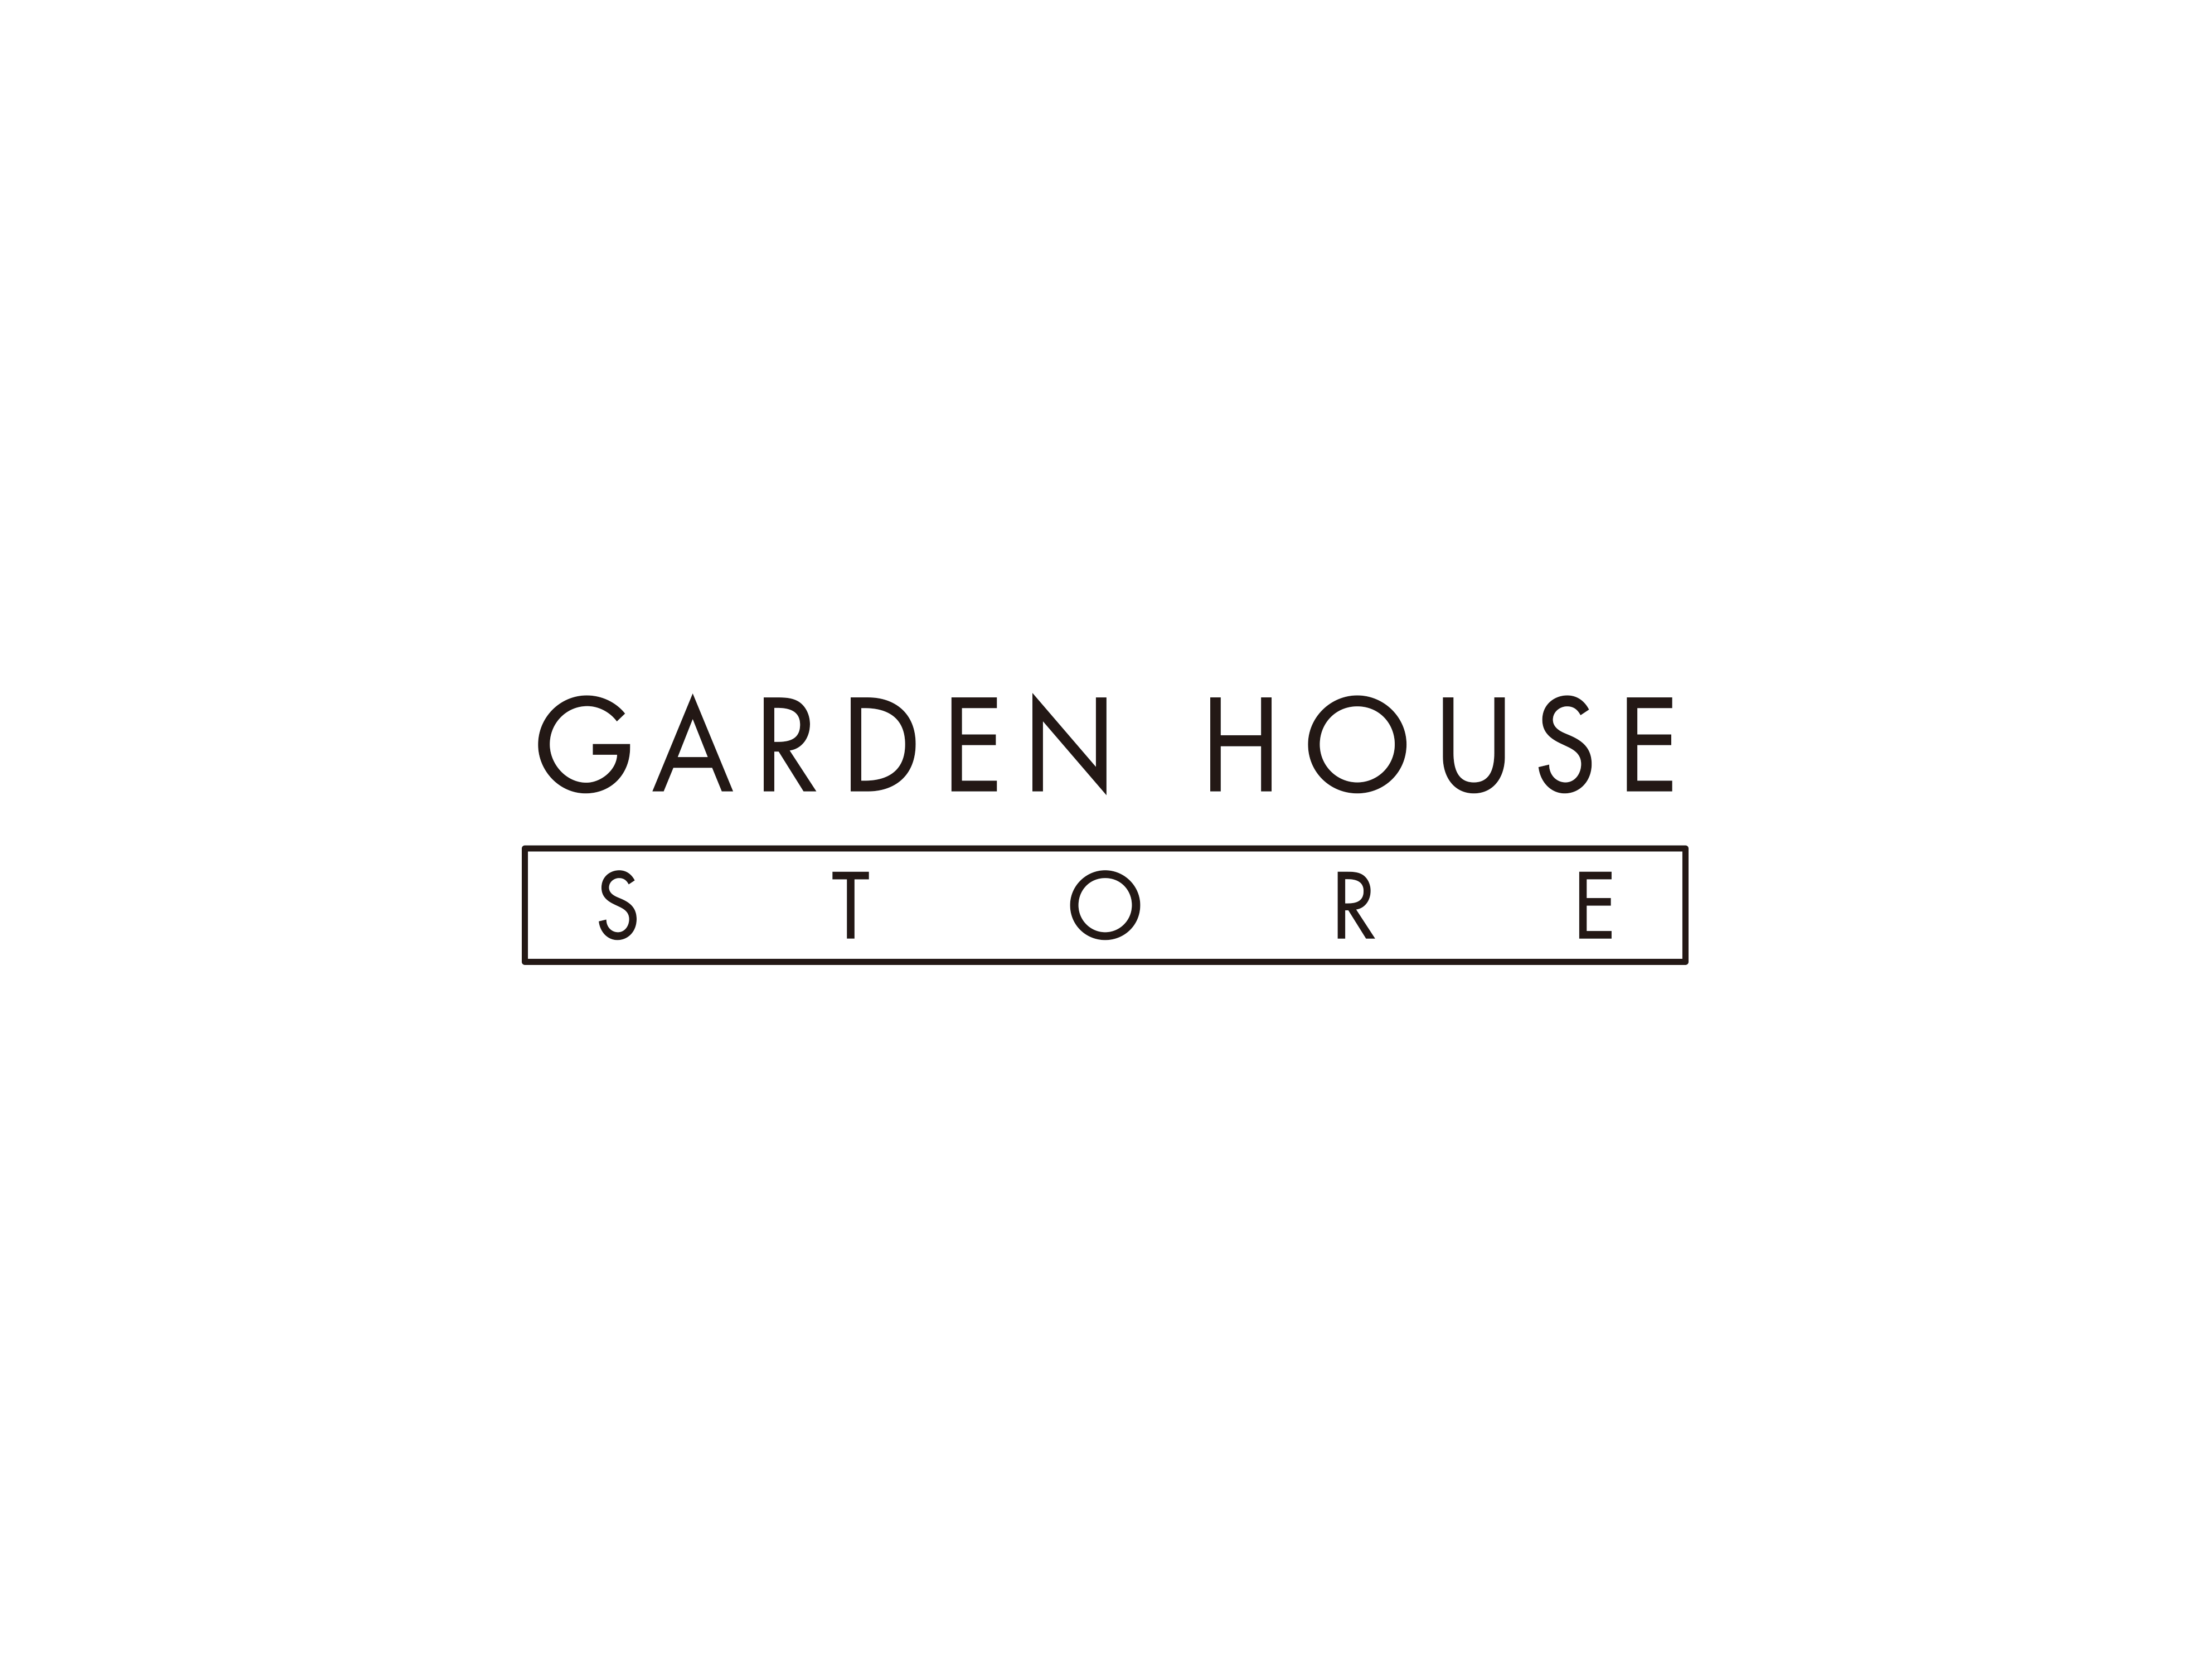 【催事】GARDEN HOUSE STORE CIAL 横浜店様にて期間限定出店【3/15(火)~】